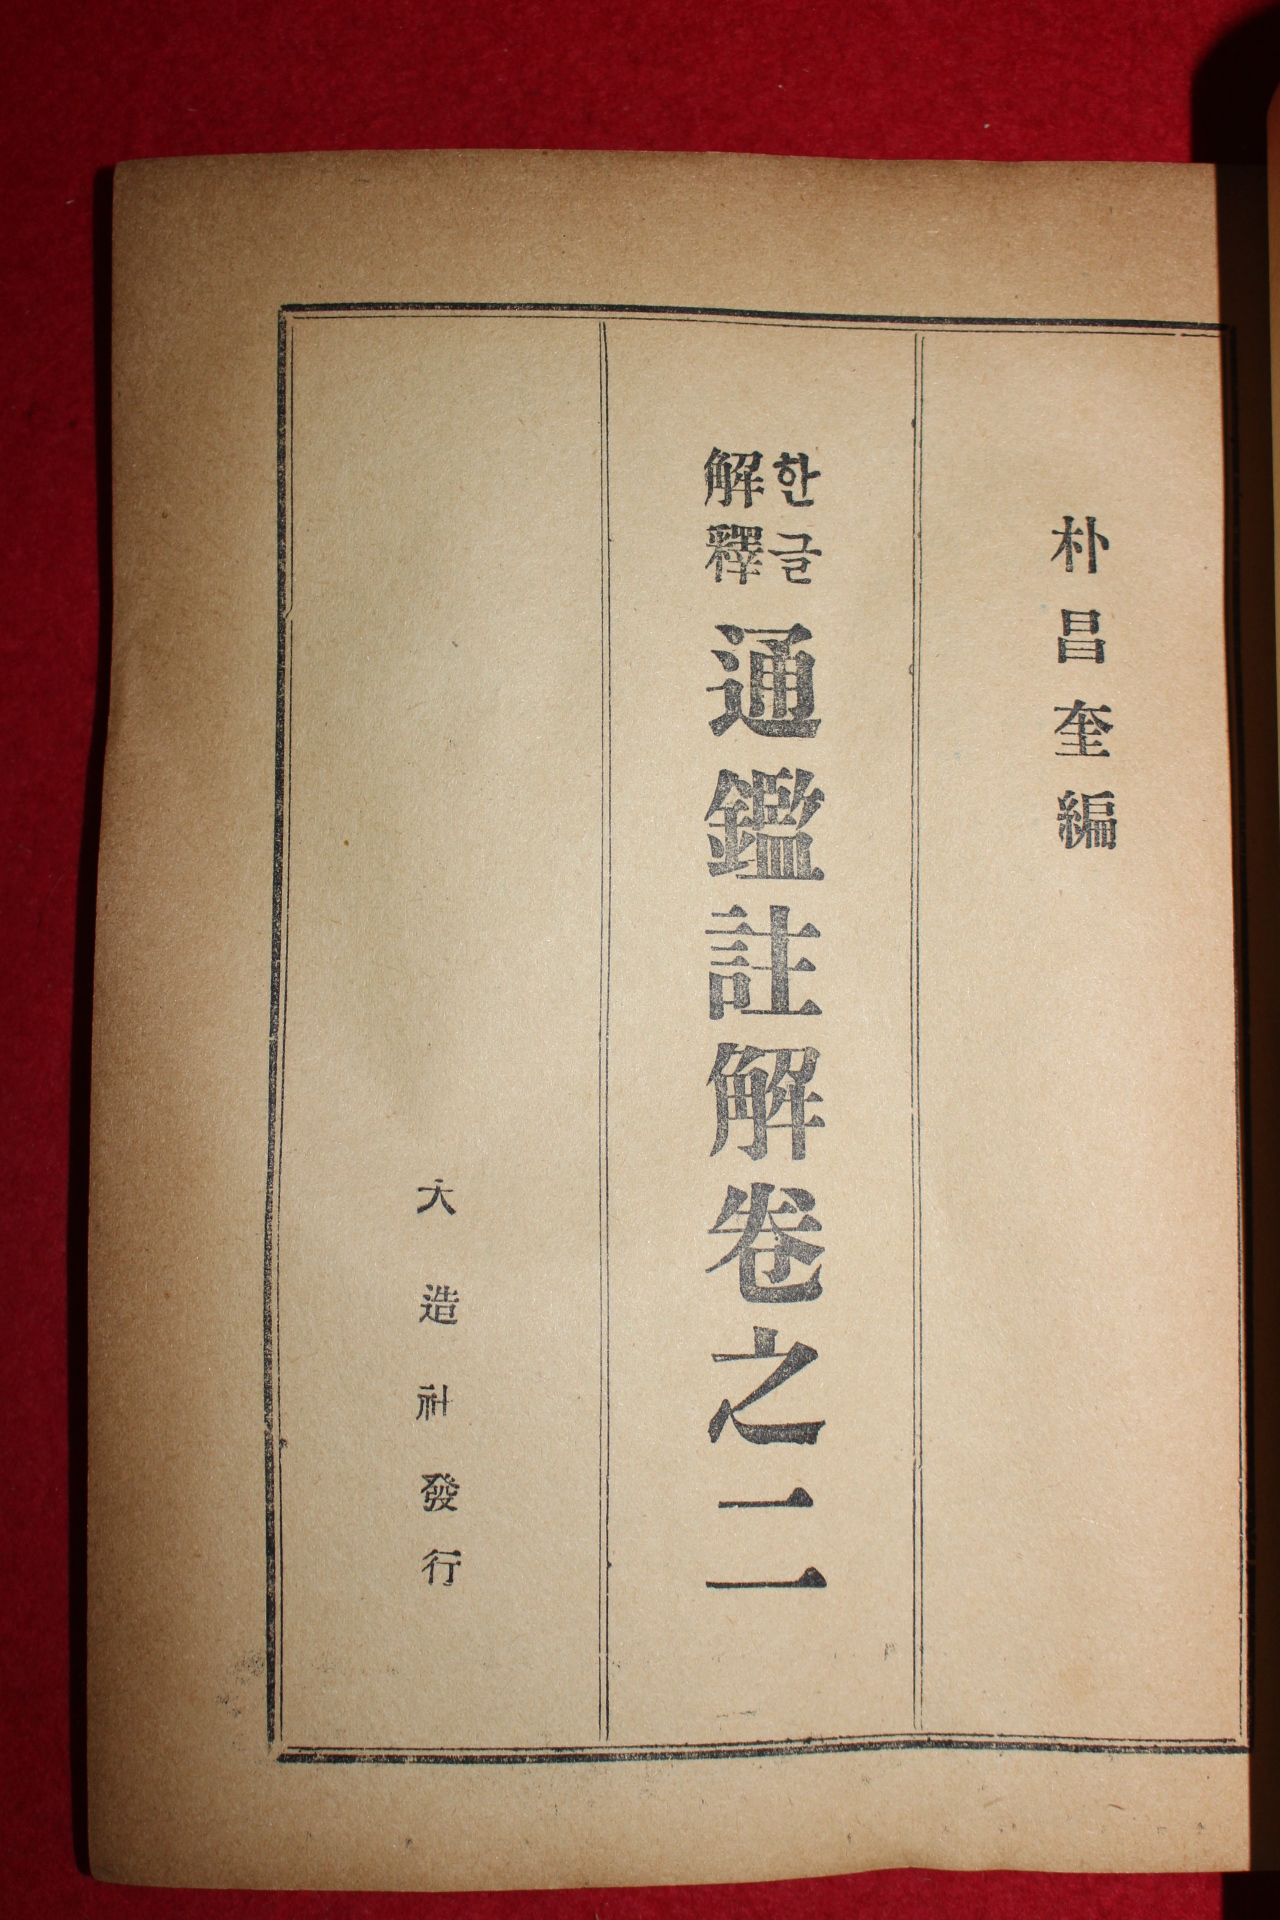 1961년 대조사 박창규(朴昌奎)편 한글해석통감주해 권2  1책